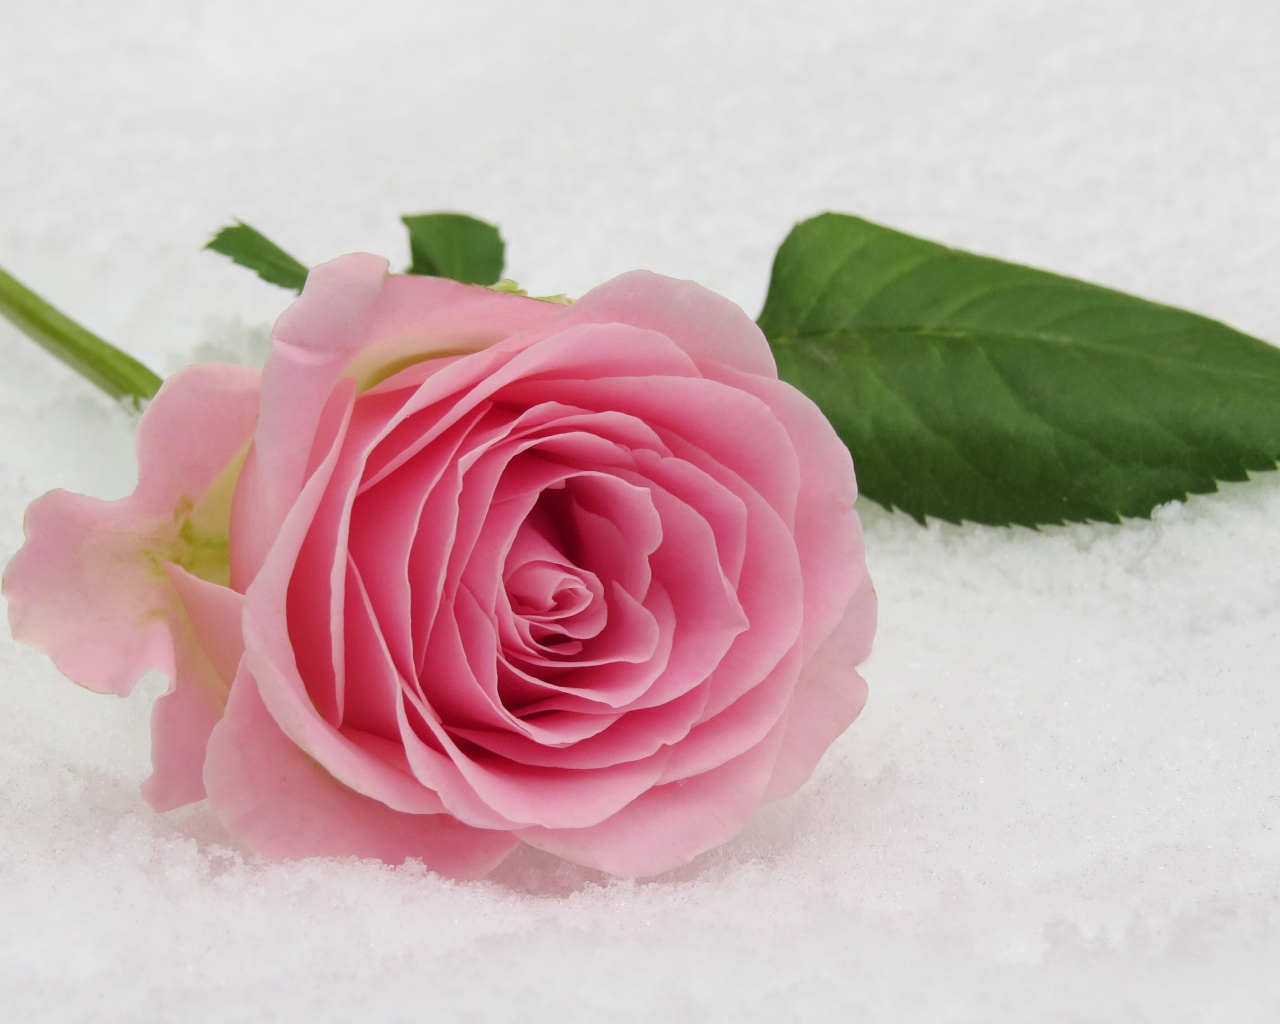 Нежный розовый цветок розы на снегу